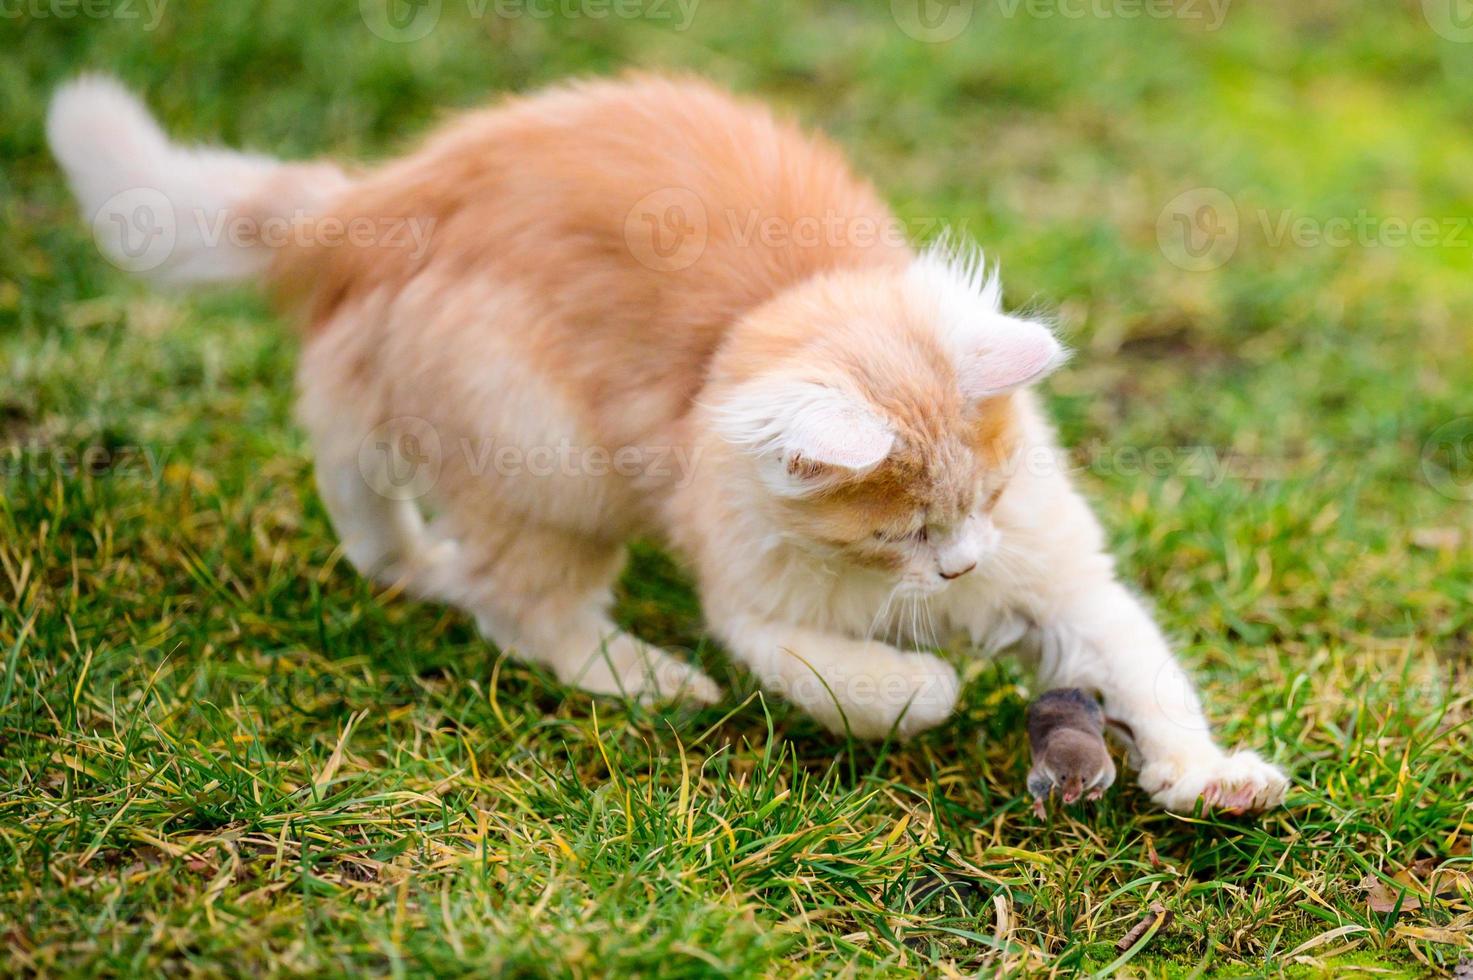 le petit chat roux chassait la taupe, un instinct naturel chez le chat. photo